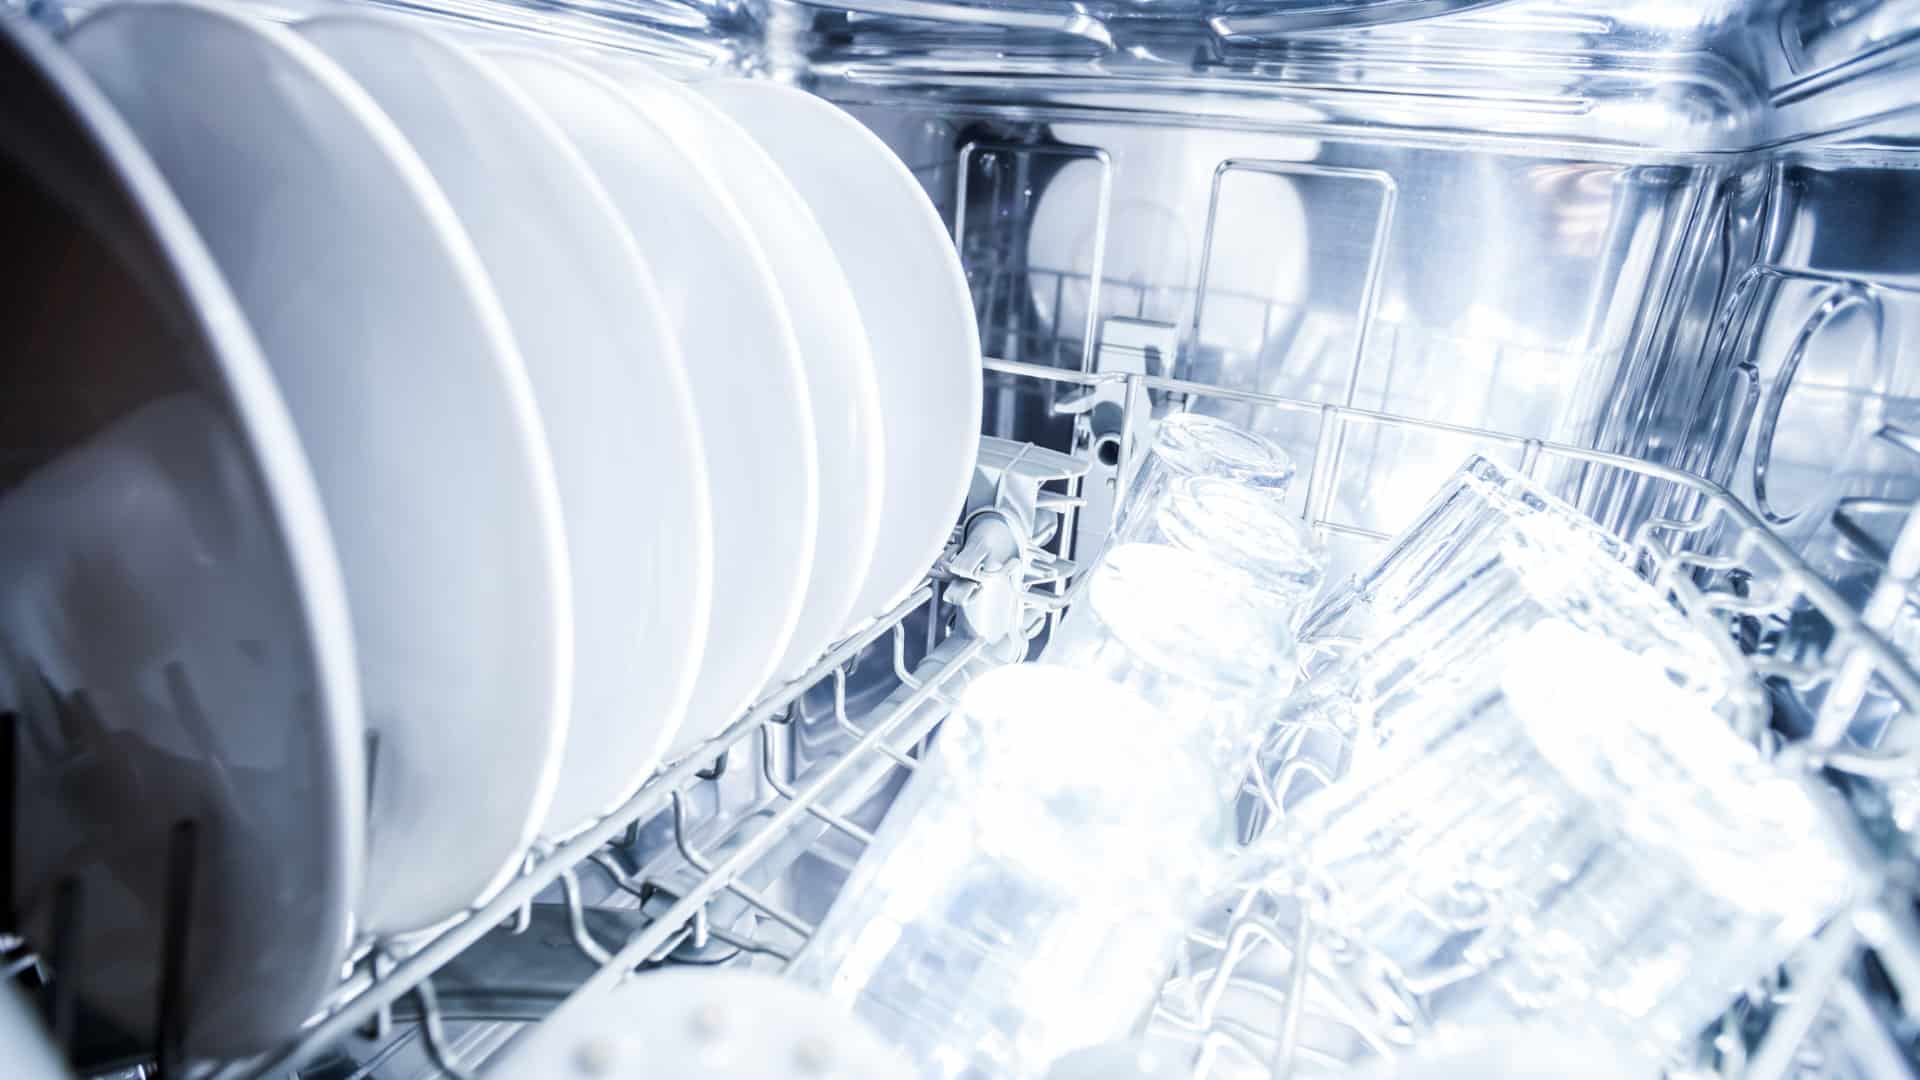 How to Fix the LG Dishwasher AE Error Code